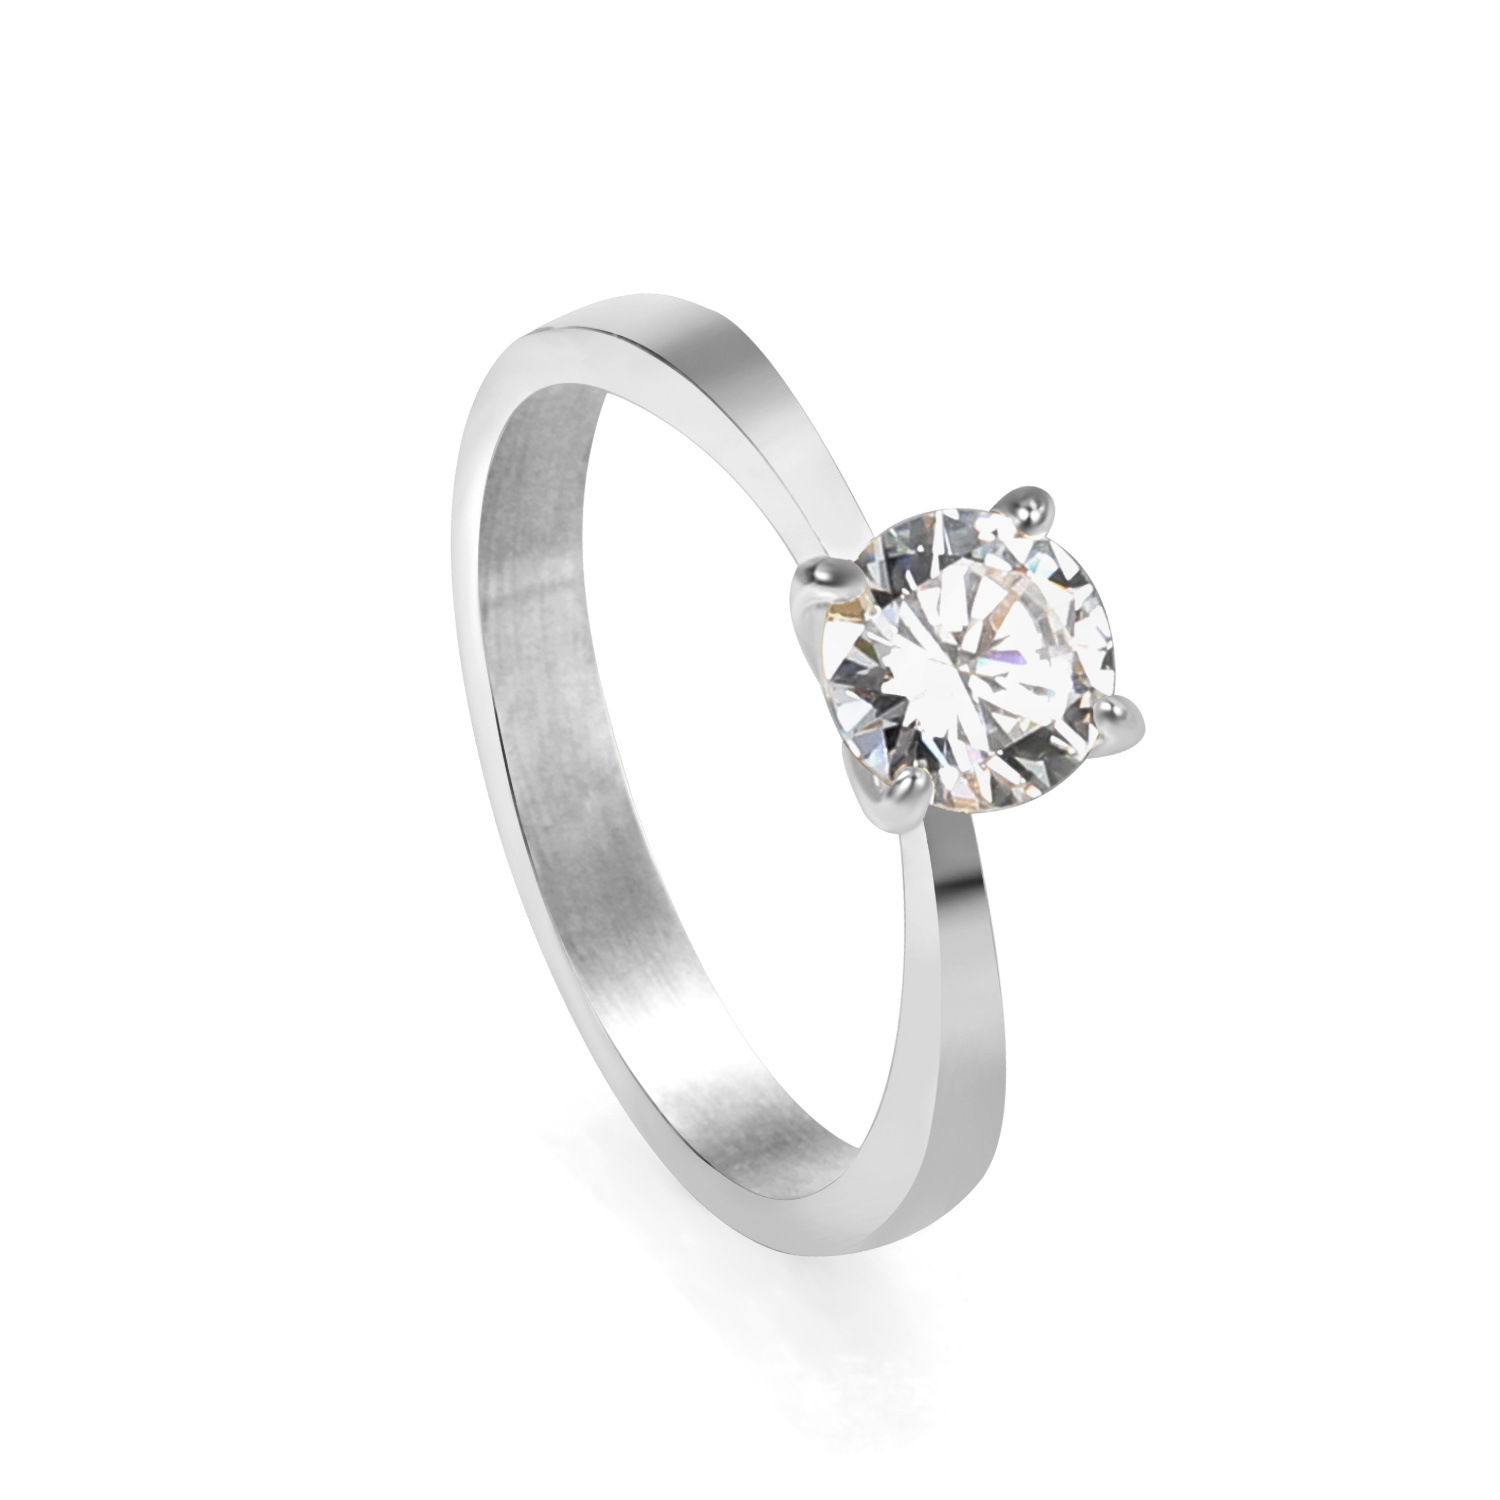 1:White diamond ring steel color RI1448A6-9S